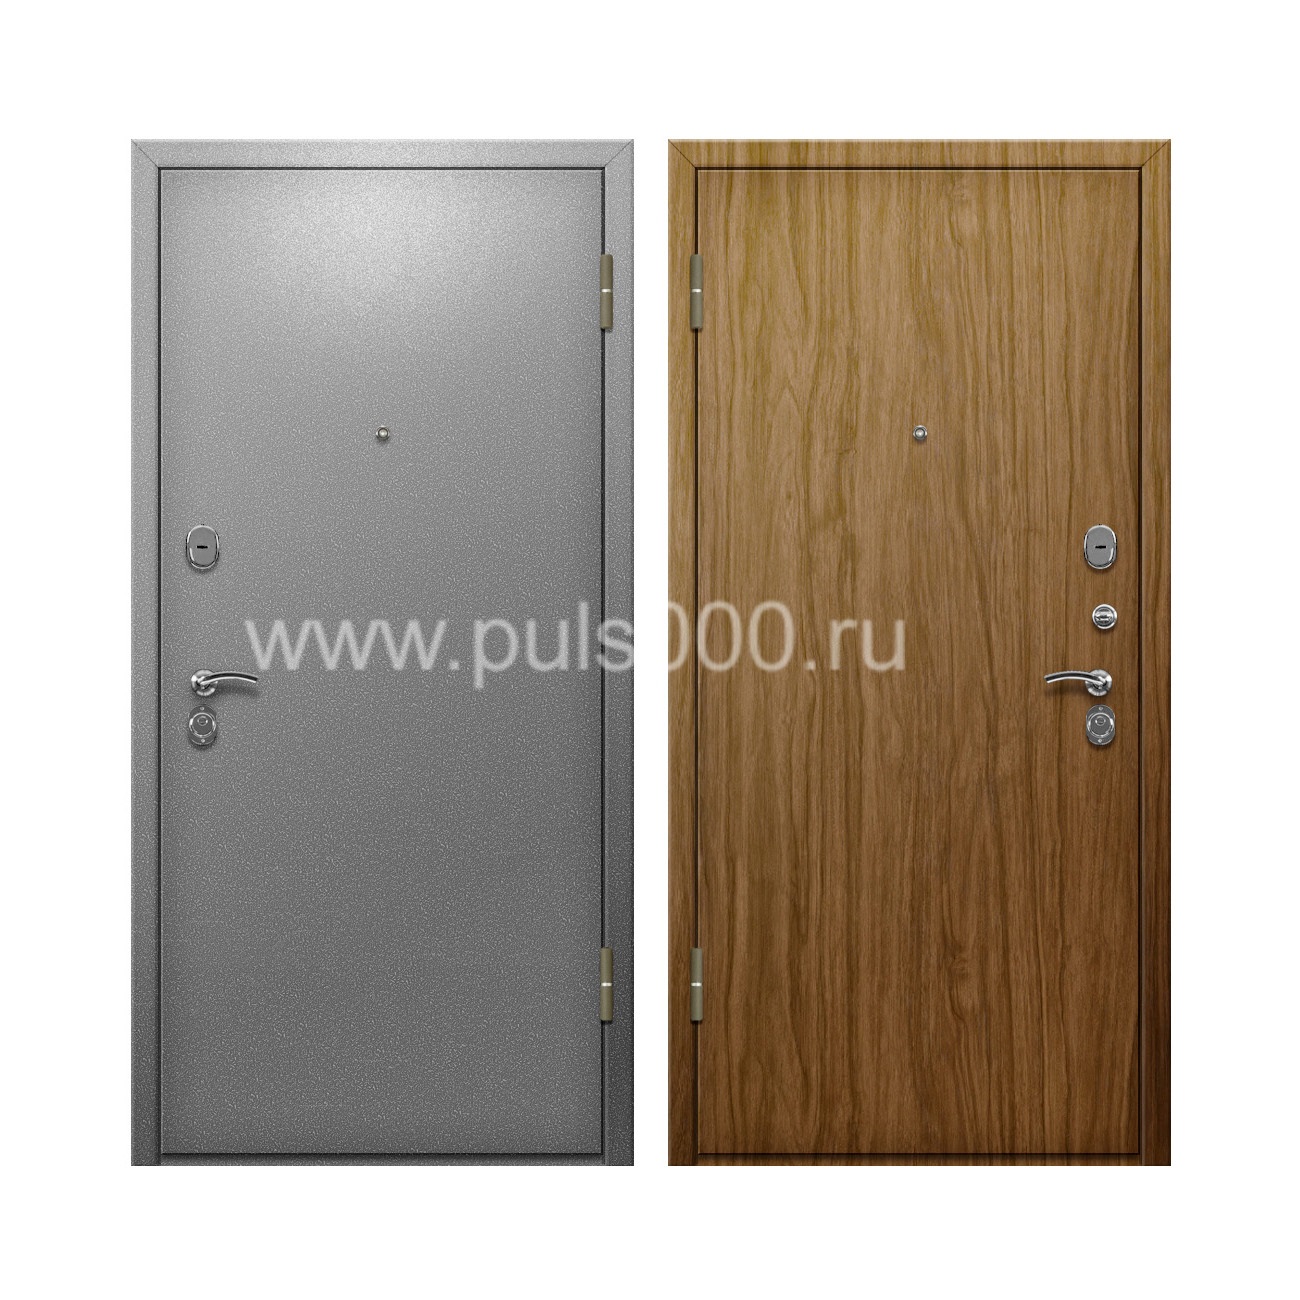 Входная дверь с серым порошковым окрасом + ламинат внутри PR-81, цена 20 000  руб.